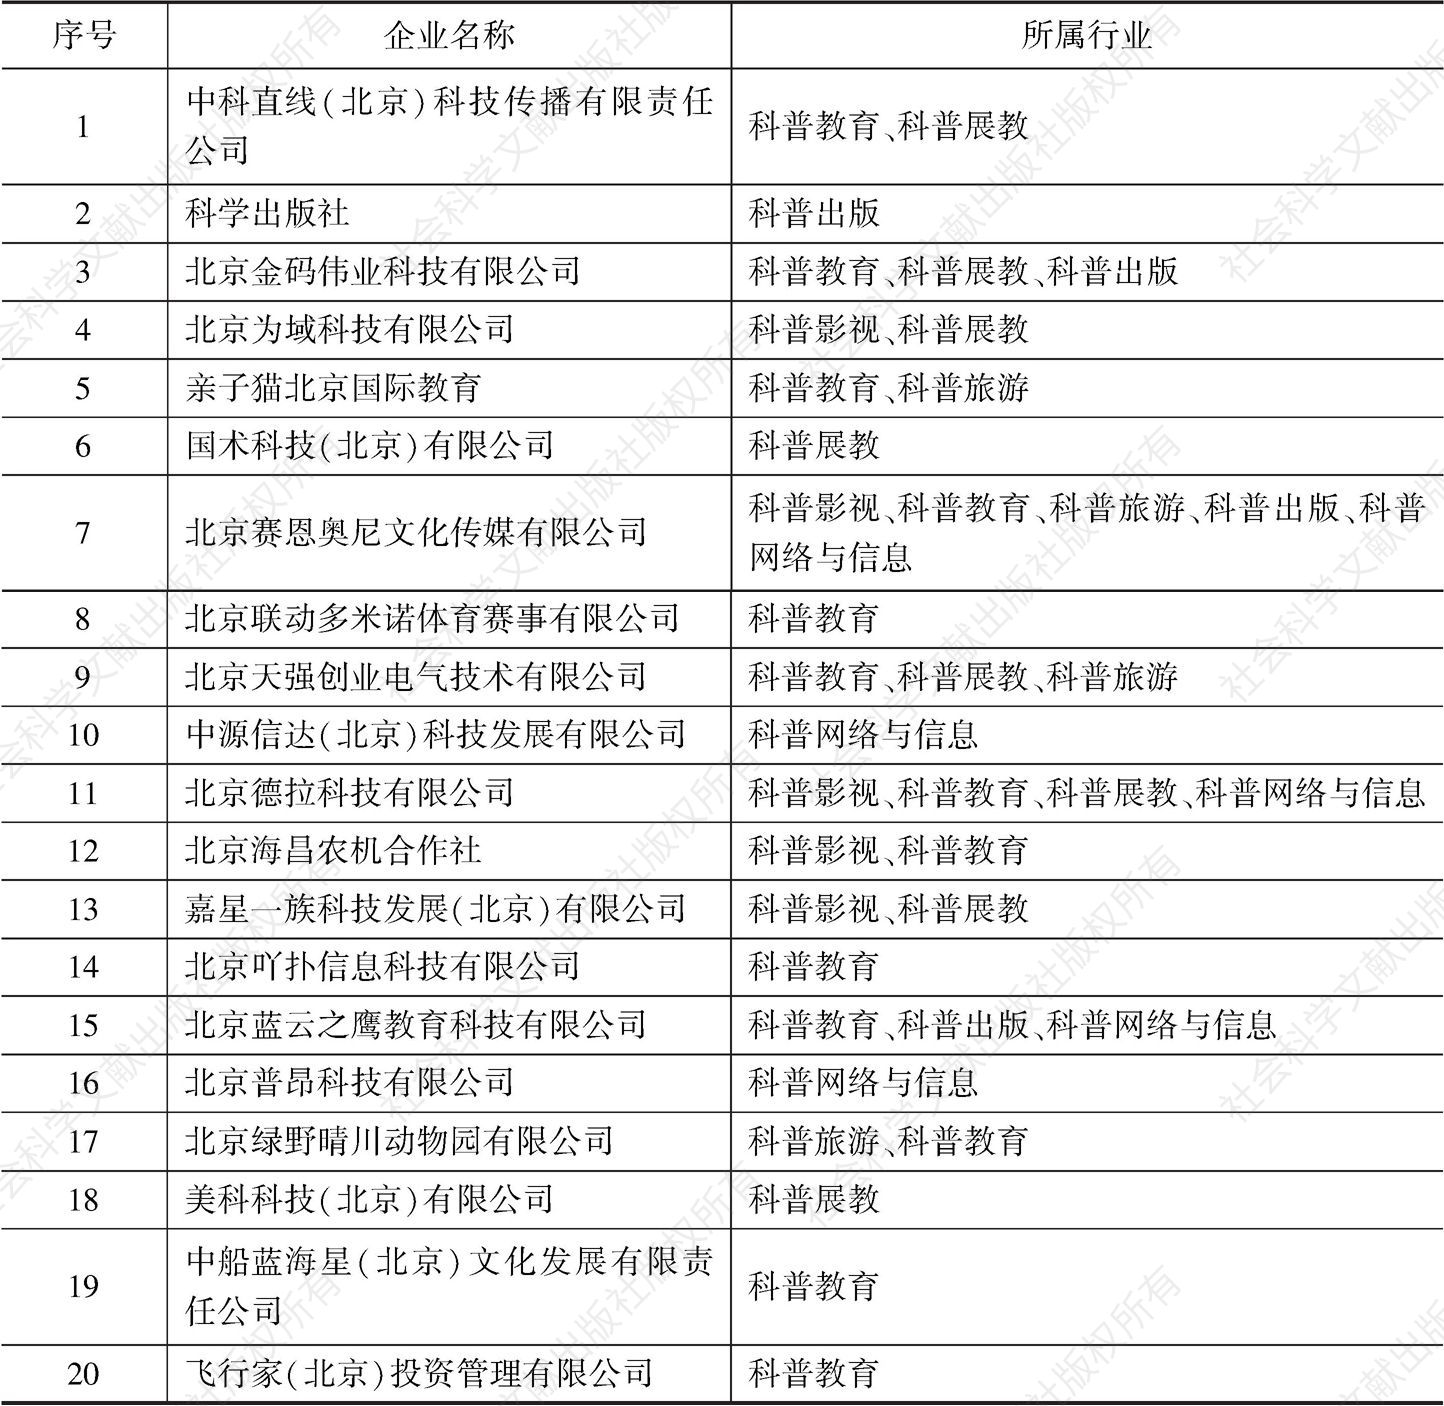 表3 抽样调查的北京科普企业名单